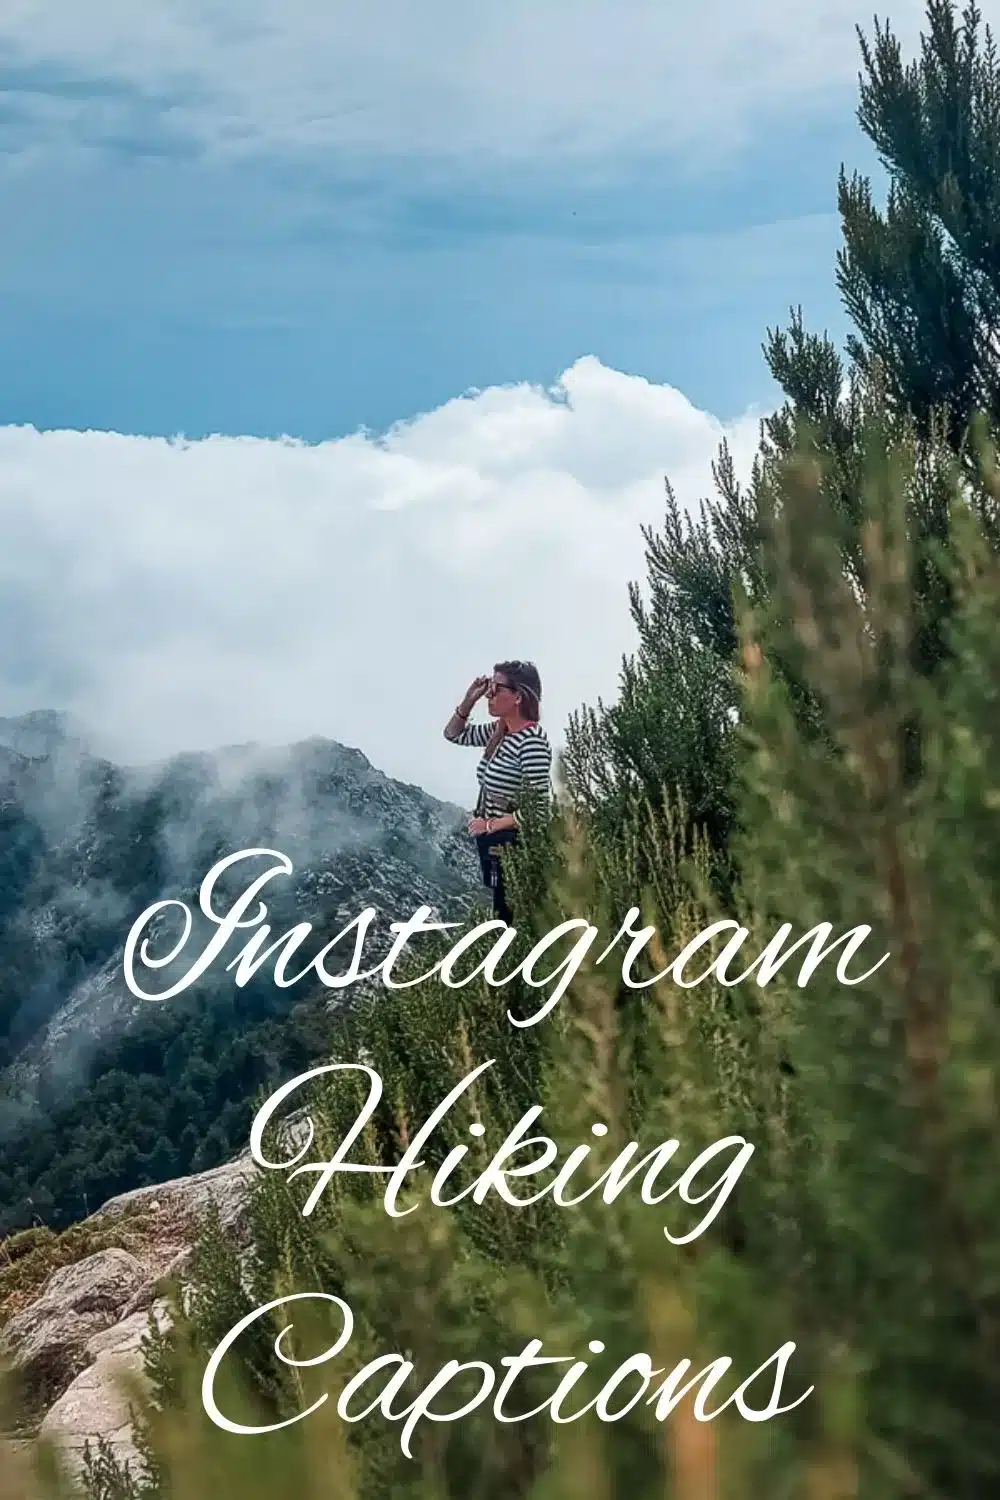 8 Favorite Captions & Post ideas after taking an Instagram break